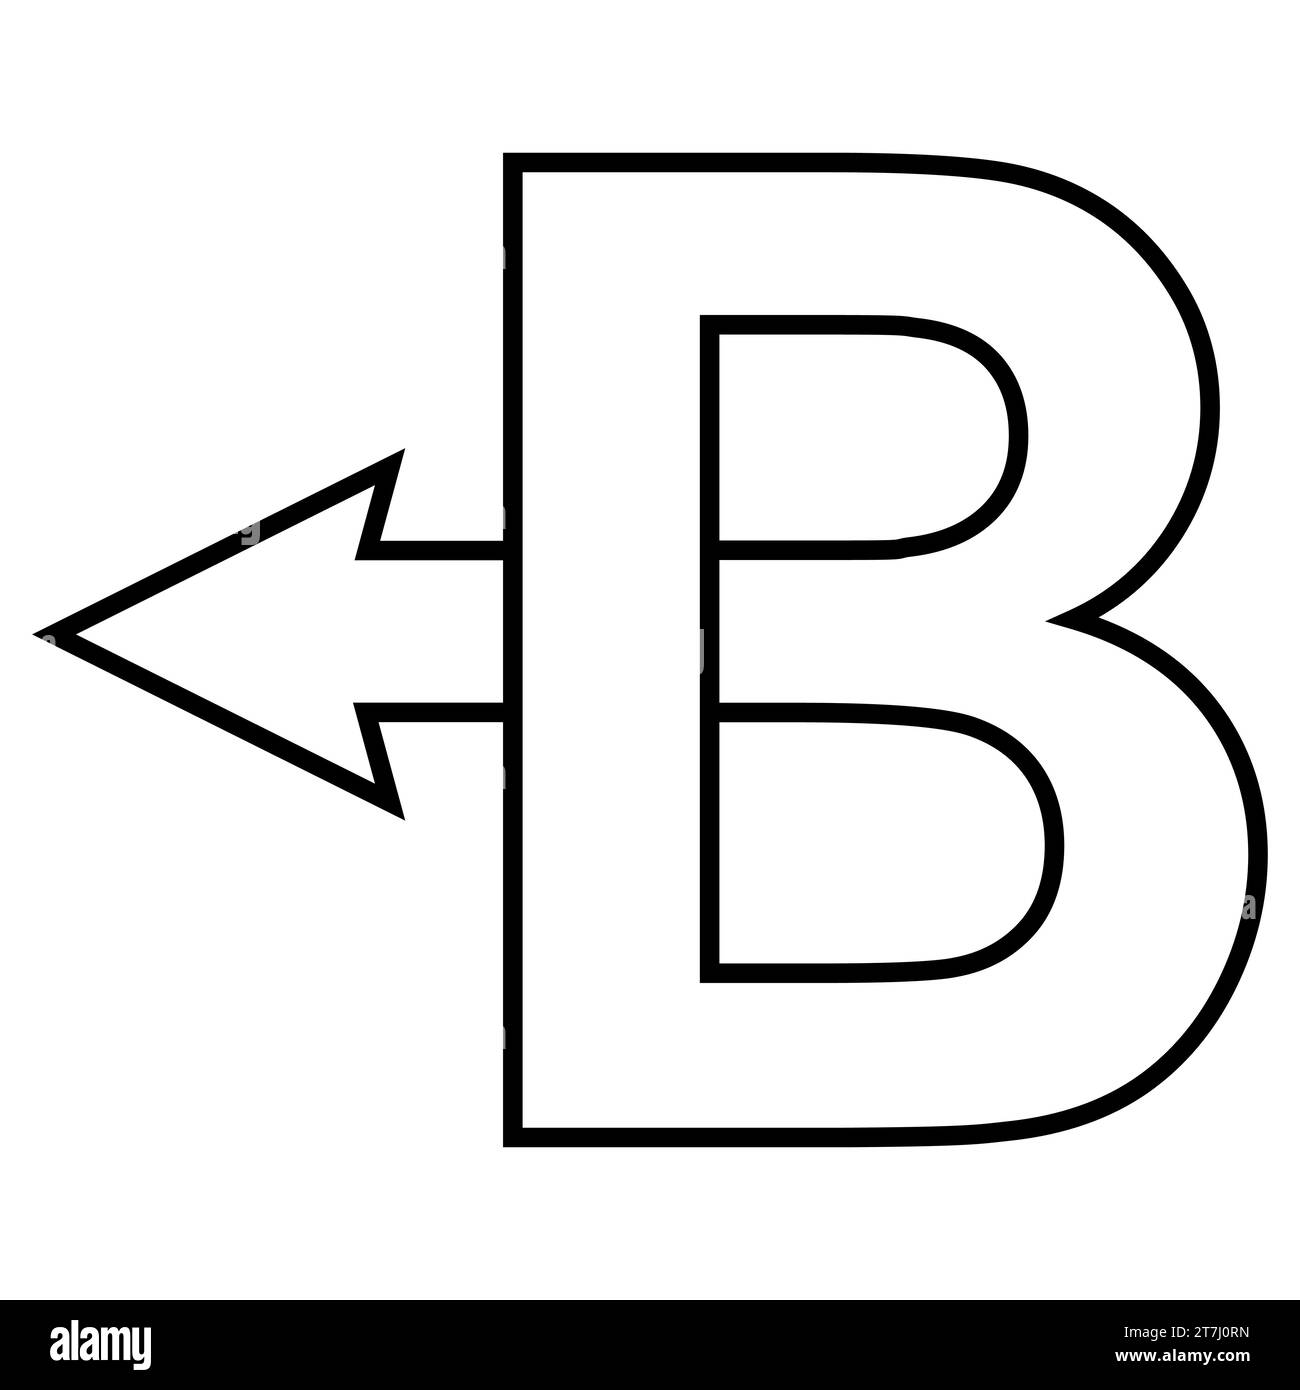 Capital letter B back arrow, back arrow B logo concept Stock Vector